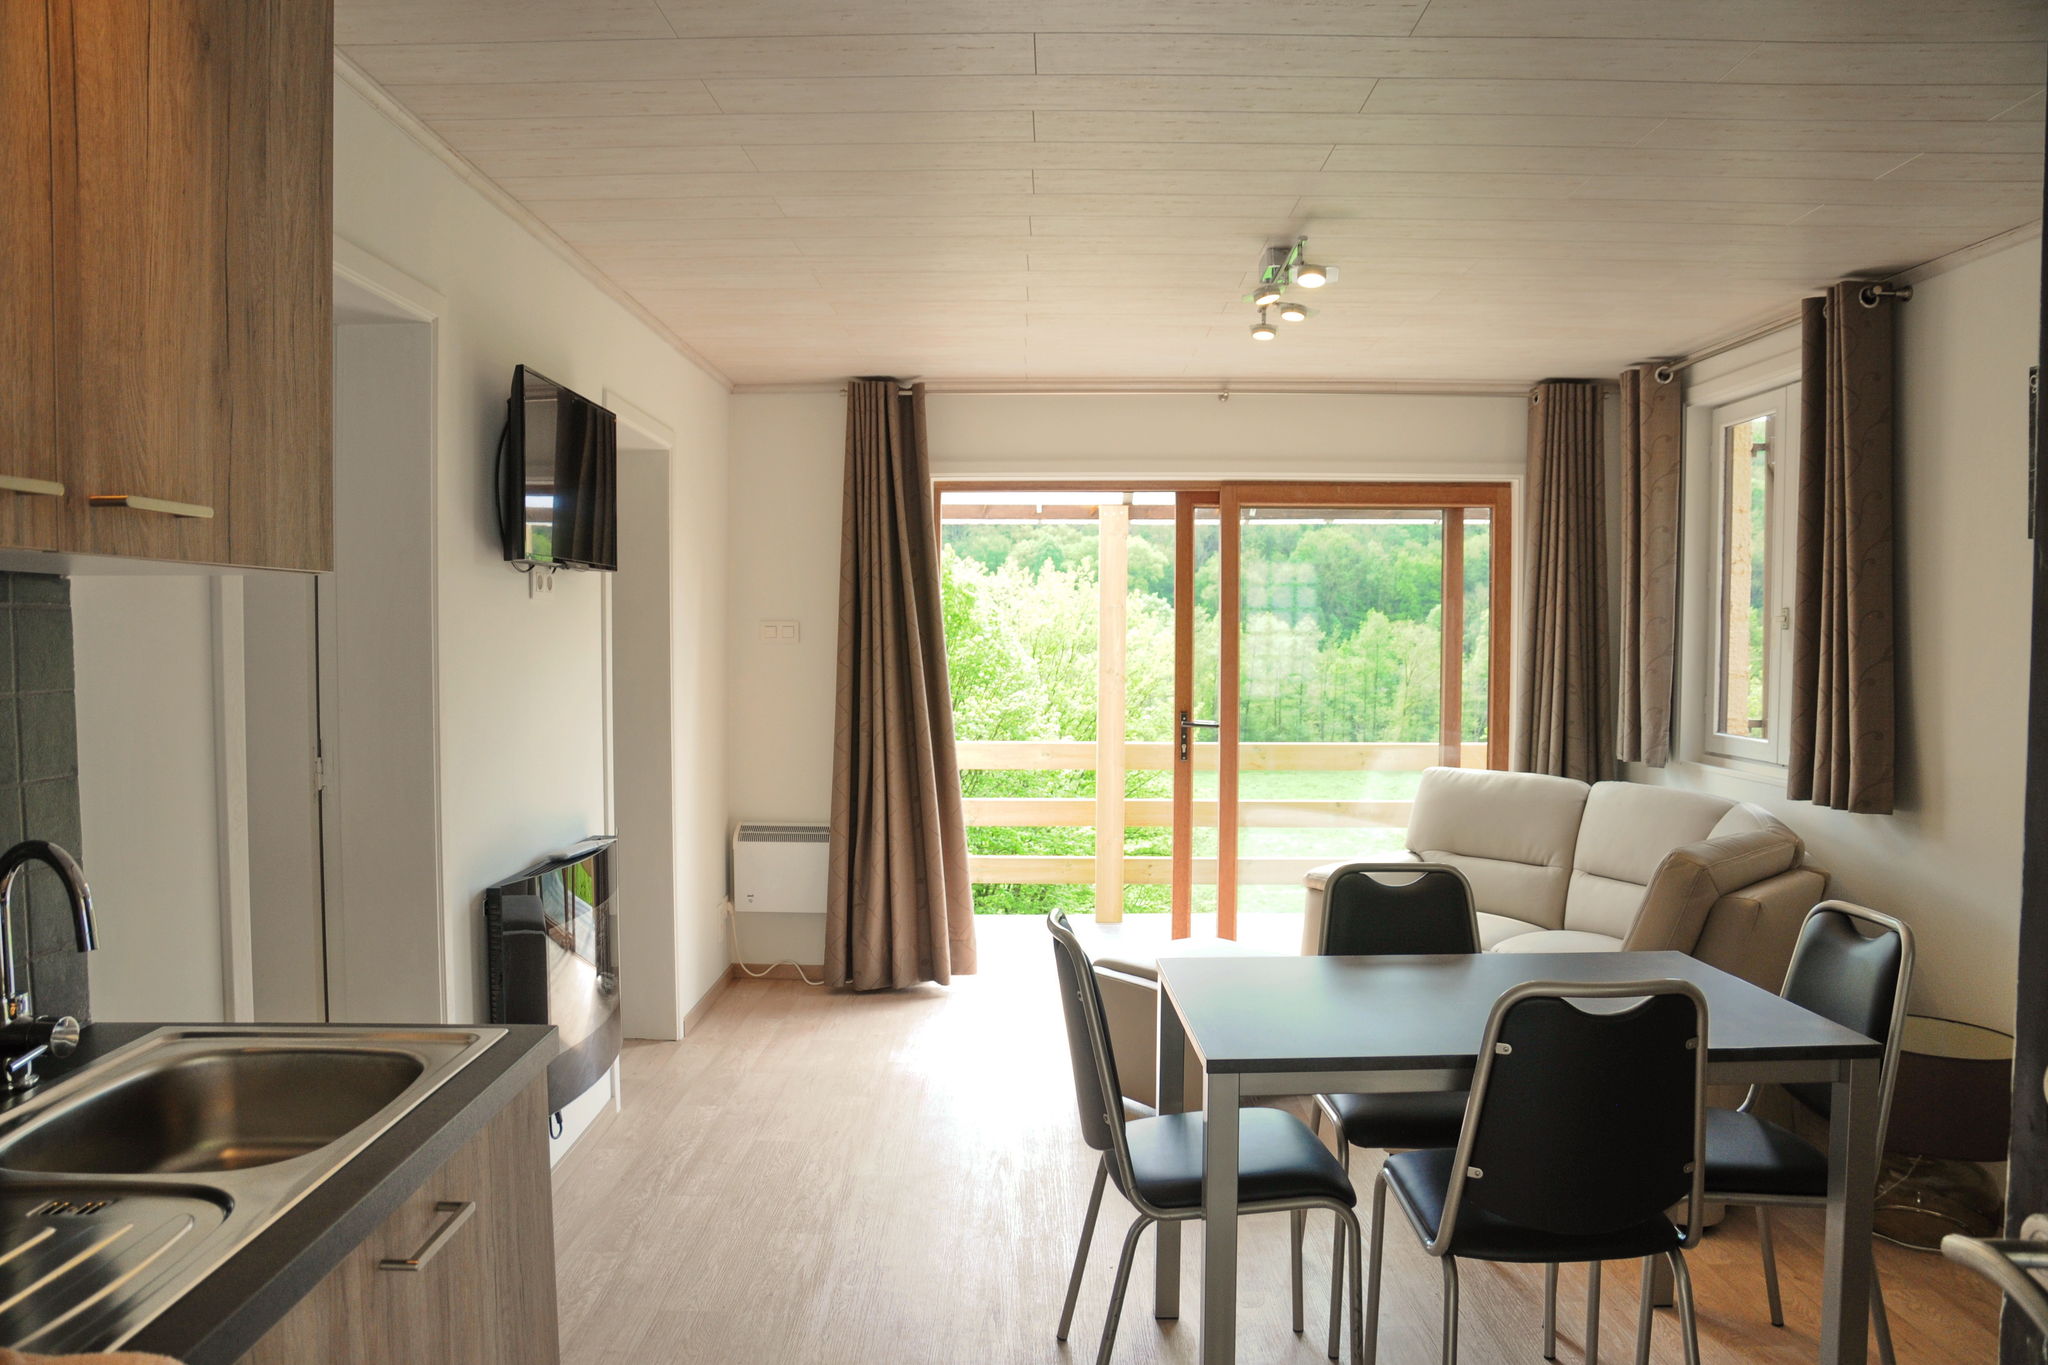 Vrijstaand vakantiehuis in de Ardennen met mooi uitzicht